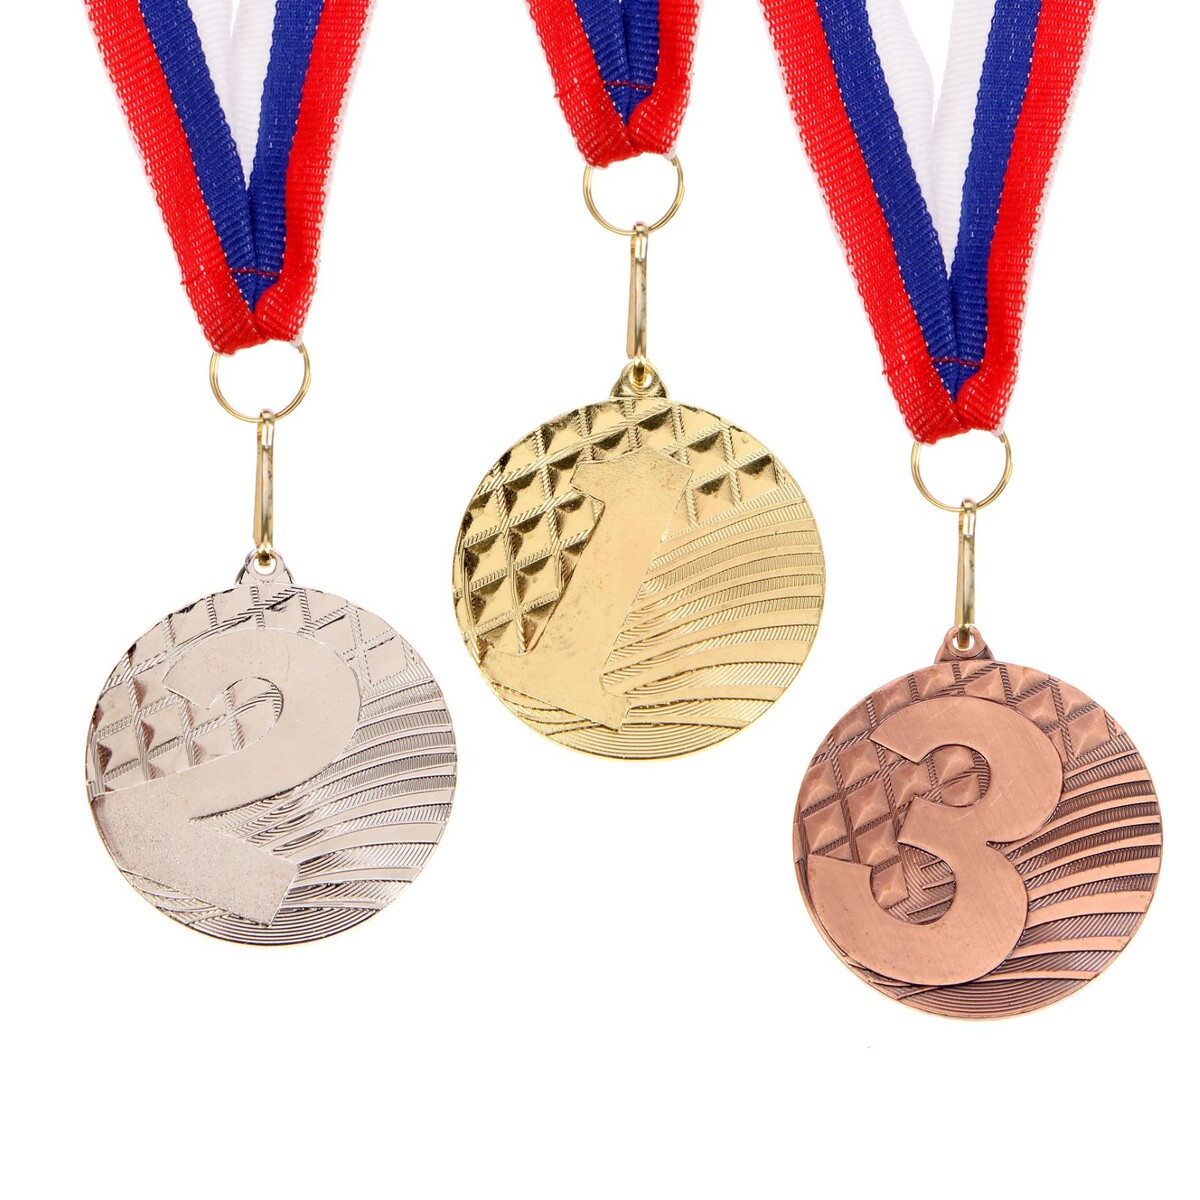 Медаль призовая 048 диам 5 см. 3 место. цвет бронз. с лентой медаль призовая 049 диам 5 см 3 место бронз с лентой